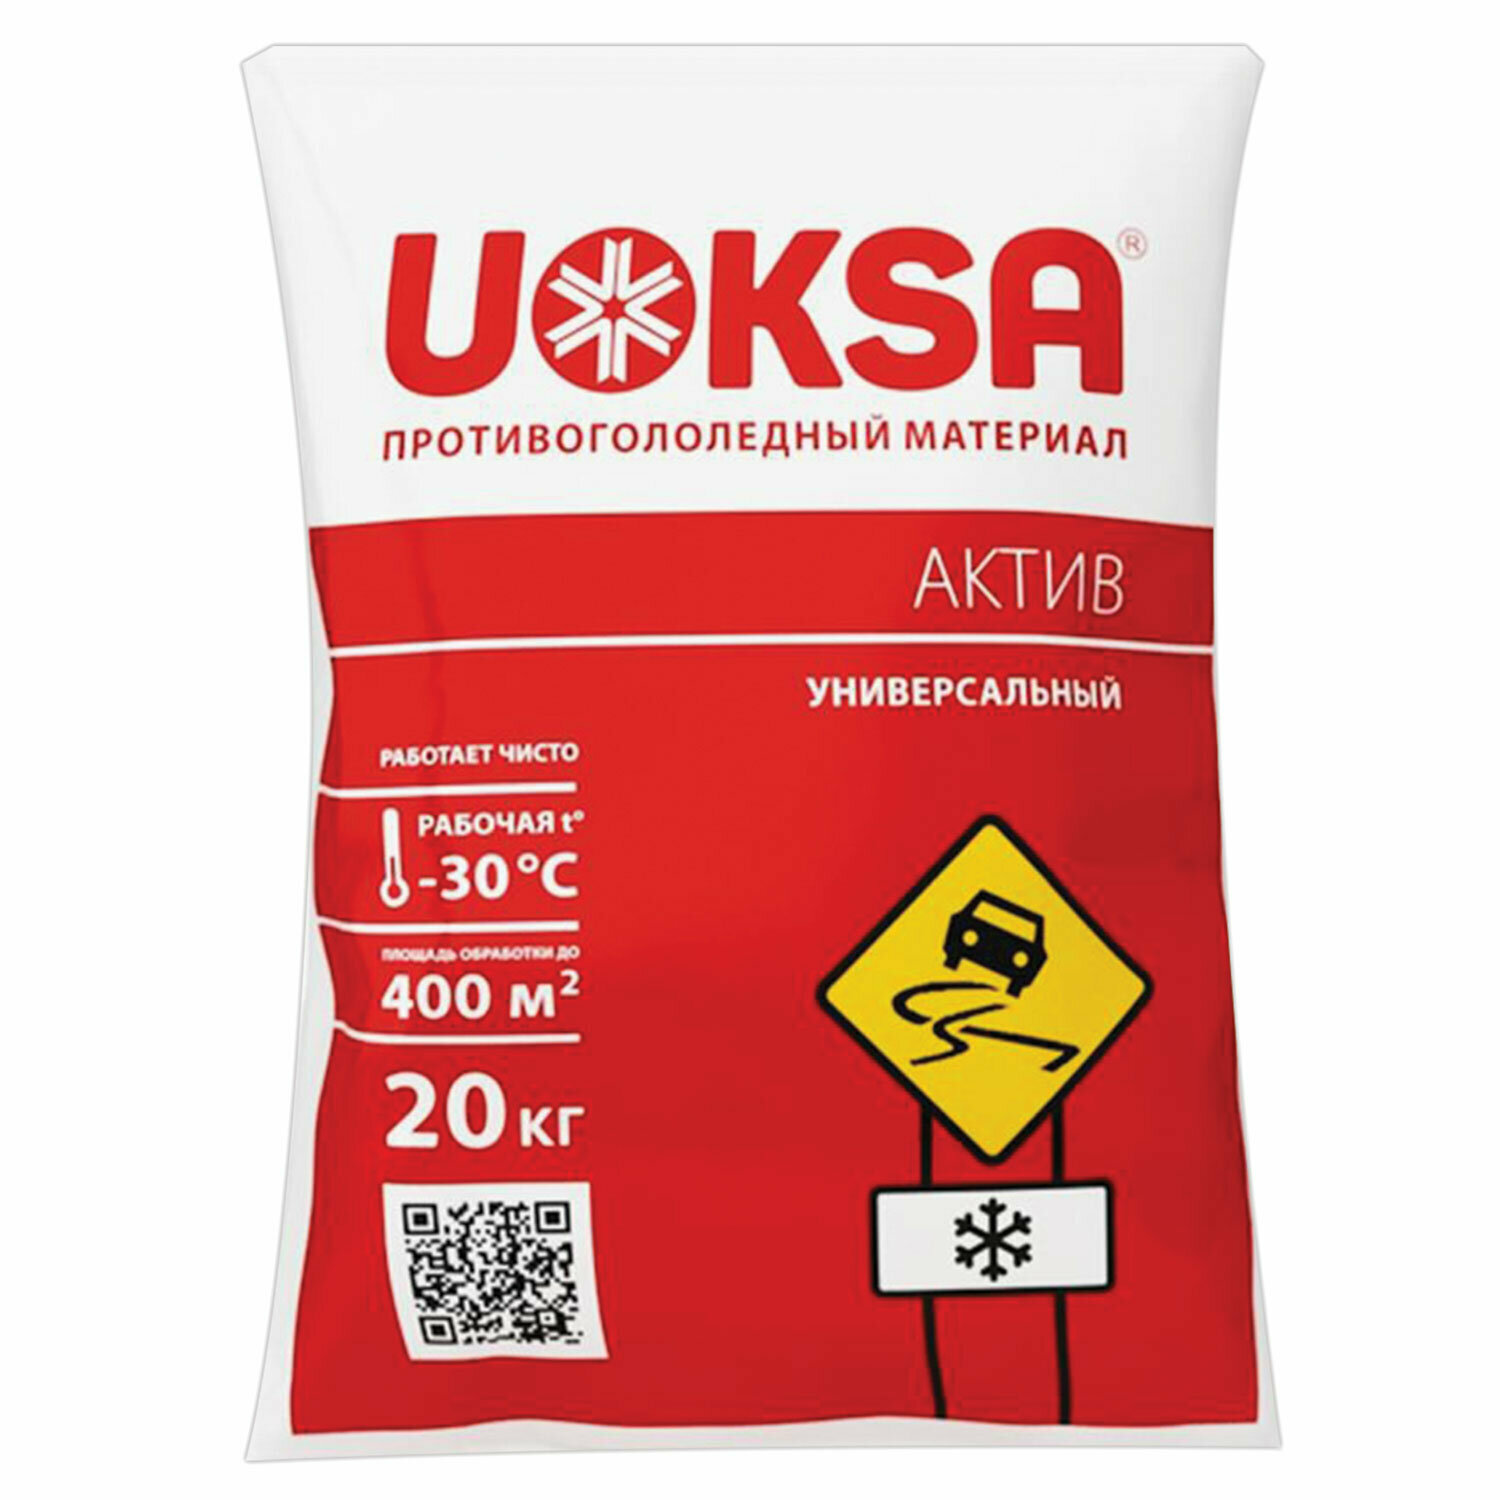 Материал противогололёдный 20 кг UOKSA Актив, до -30°C, хлорид кальция + минеральной соли, мешок В комплекте: 1шт.